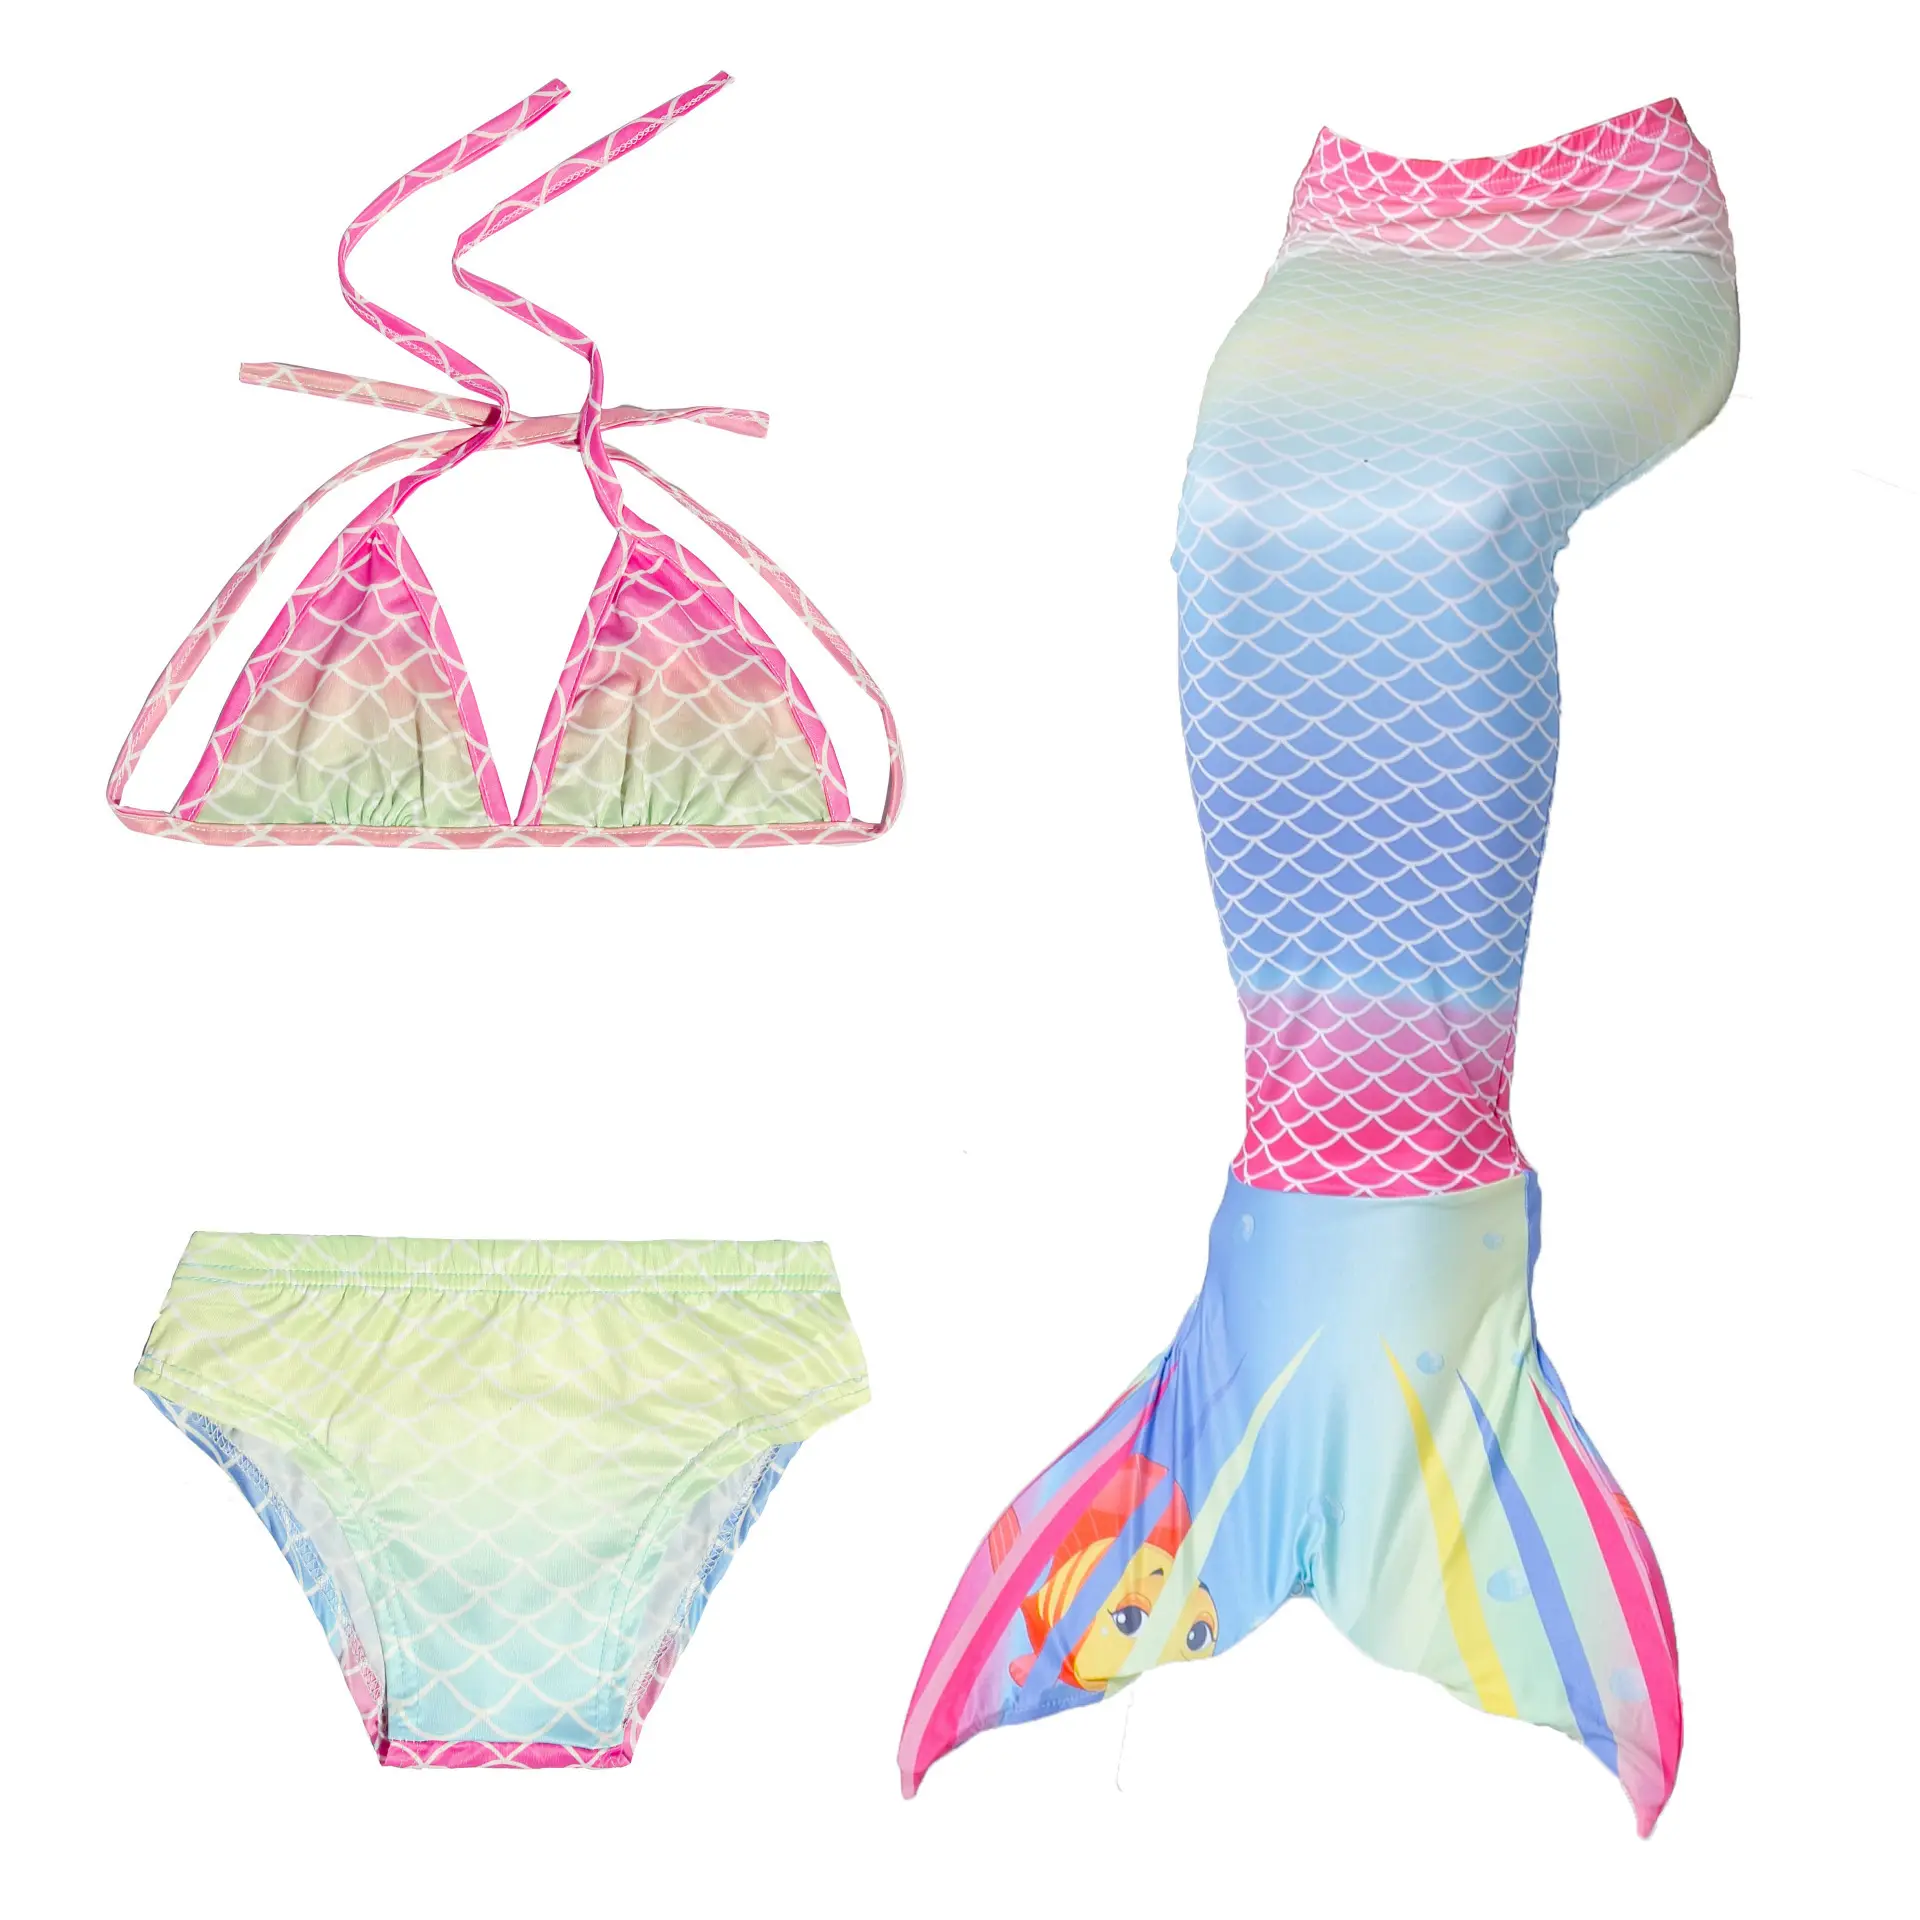 الجملة حار بيع جديد أنماط ثلاثة قطعة حورية البحر ملابس السباحة عالية الجودة الطباعة cospaly ملابس سباحة للأطفال